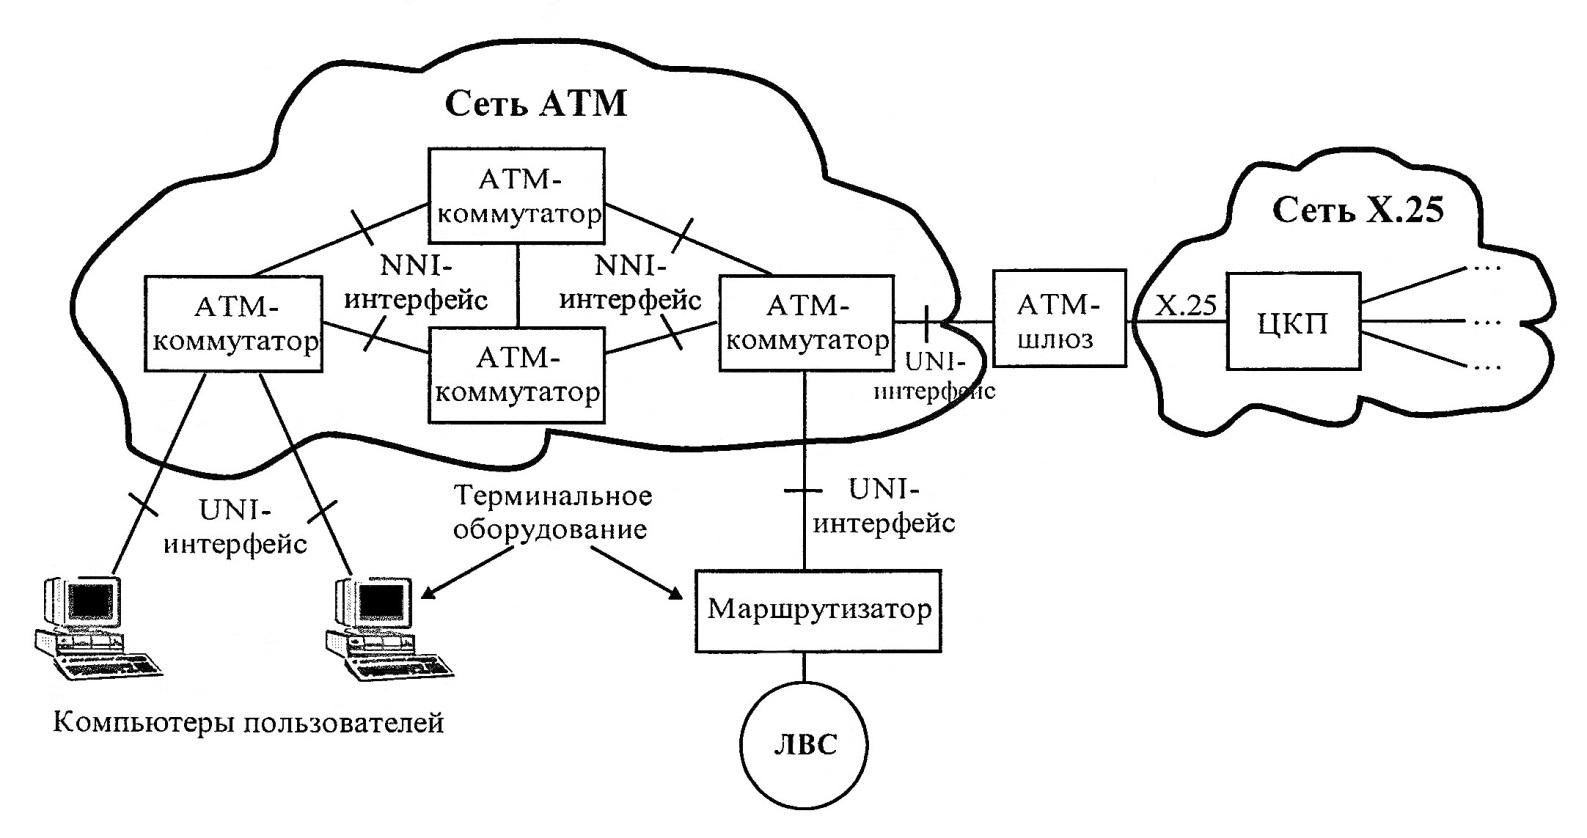 Передача данных по голосовым каналам. ATM технология передачи данных. Структура сети ATM. Стандарты технологии ATM. Схема мультиплексирования сети ATM.